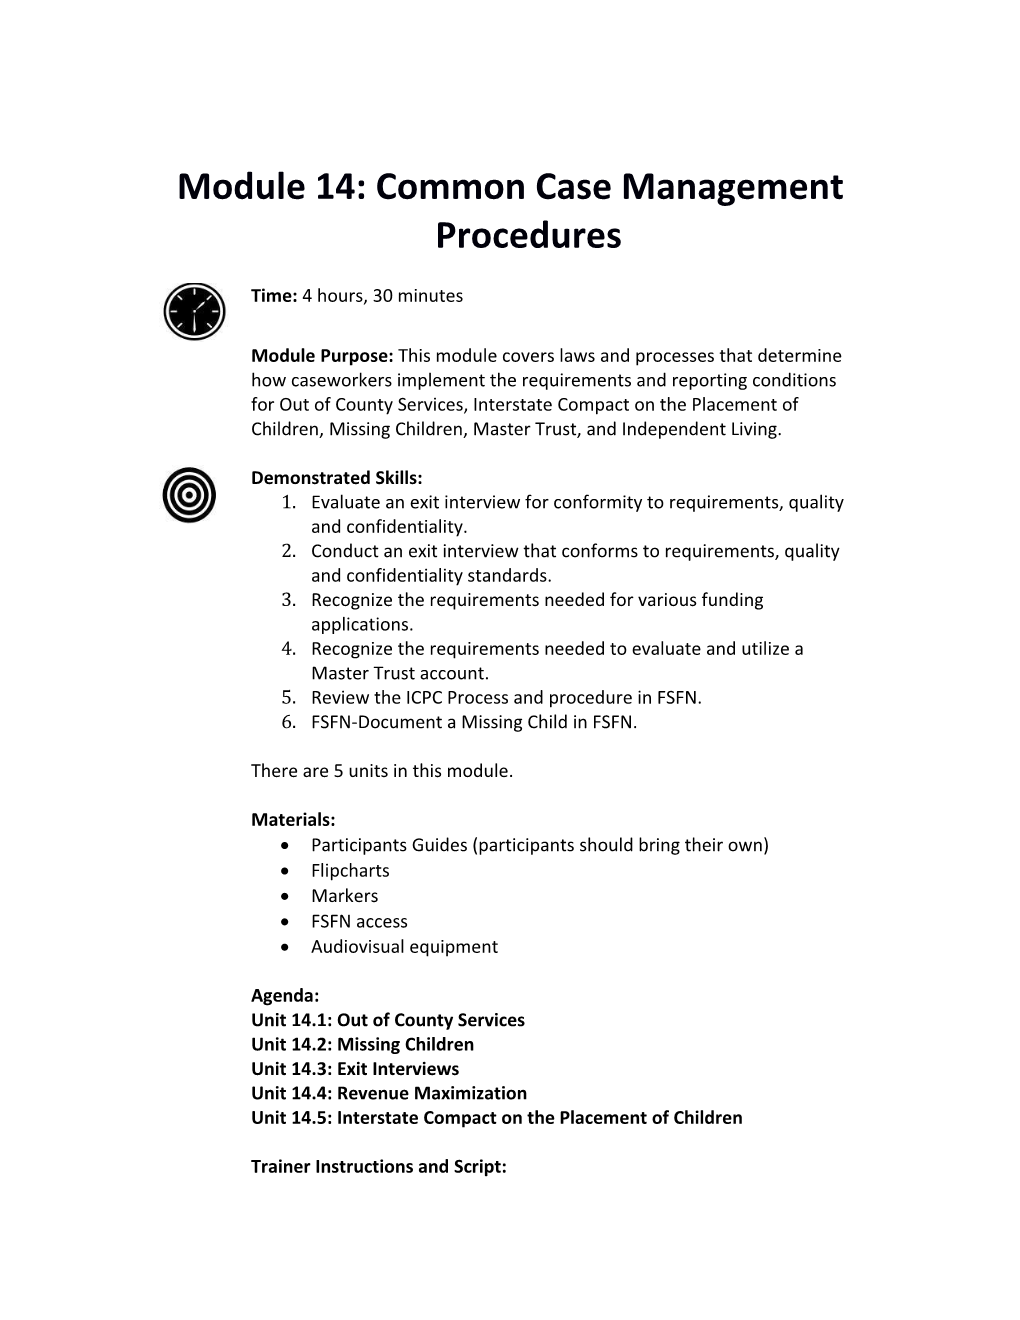 Module 14: Common Case Management Procedures